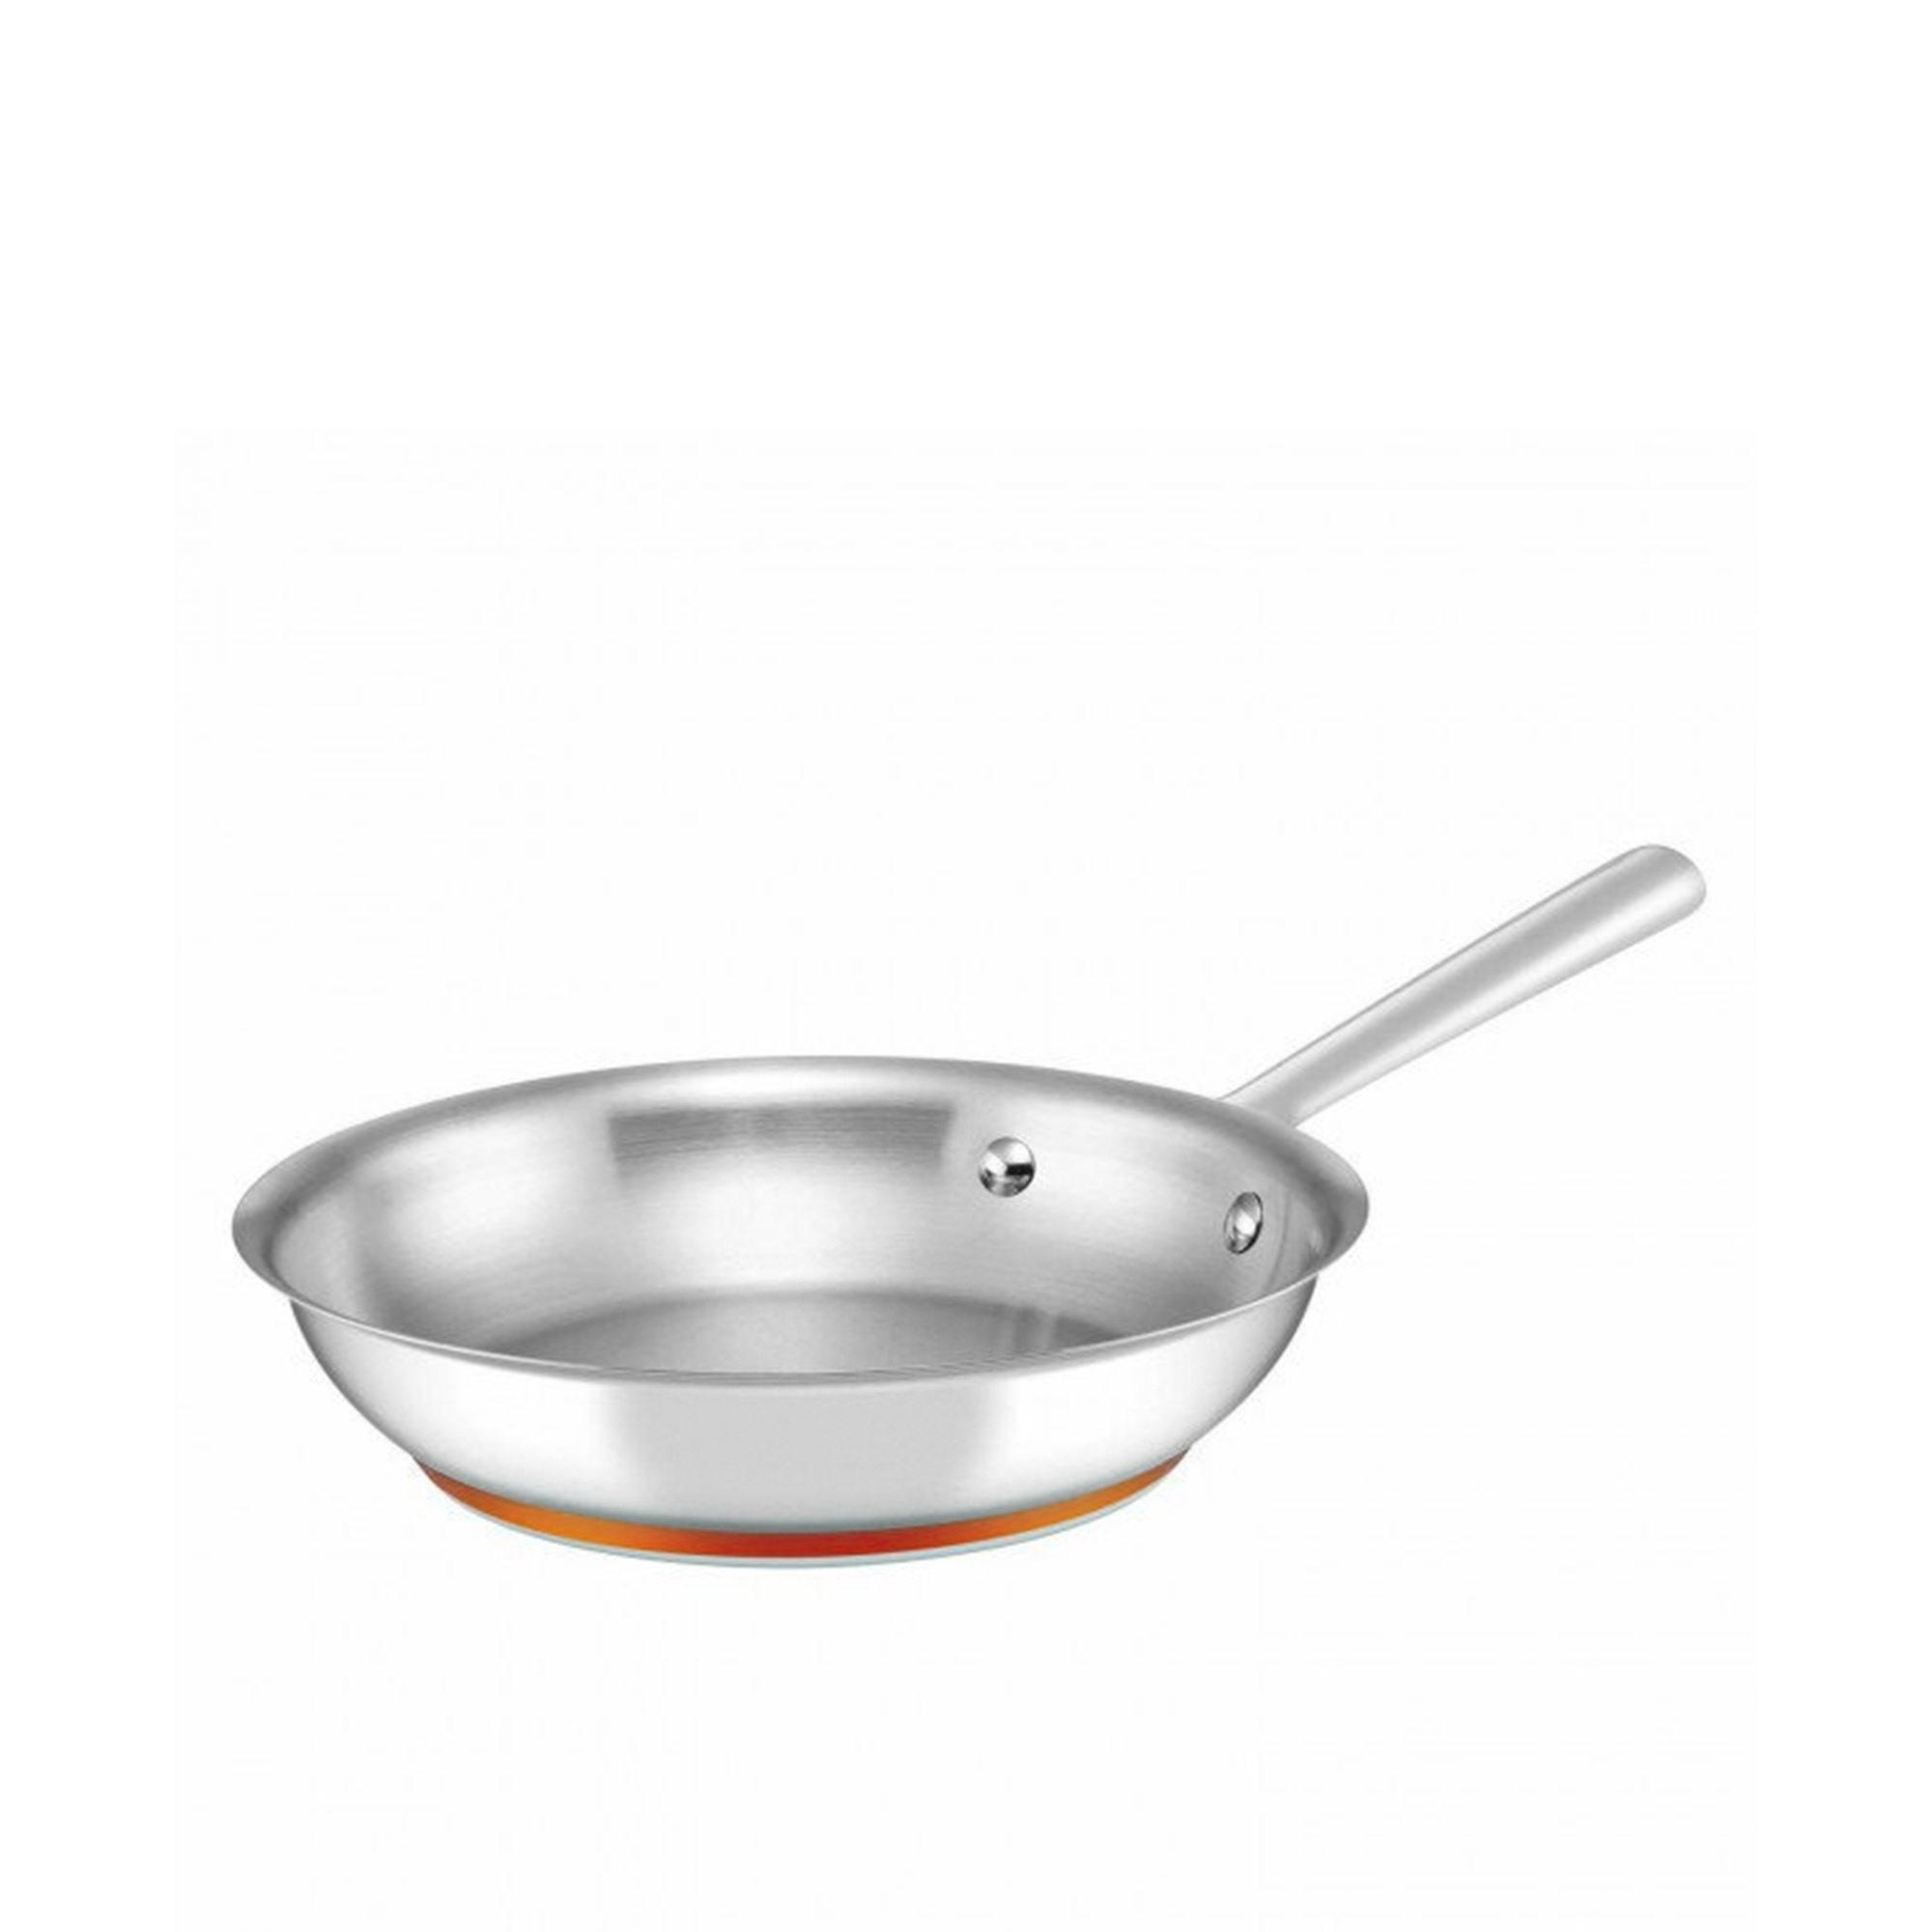 Essteele Per Vita 4pc Stainless Steel Cookware Set Image 6